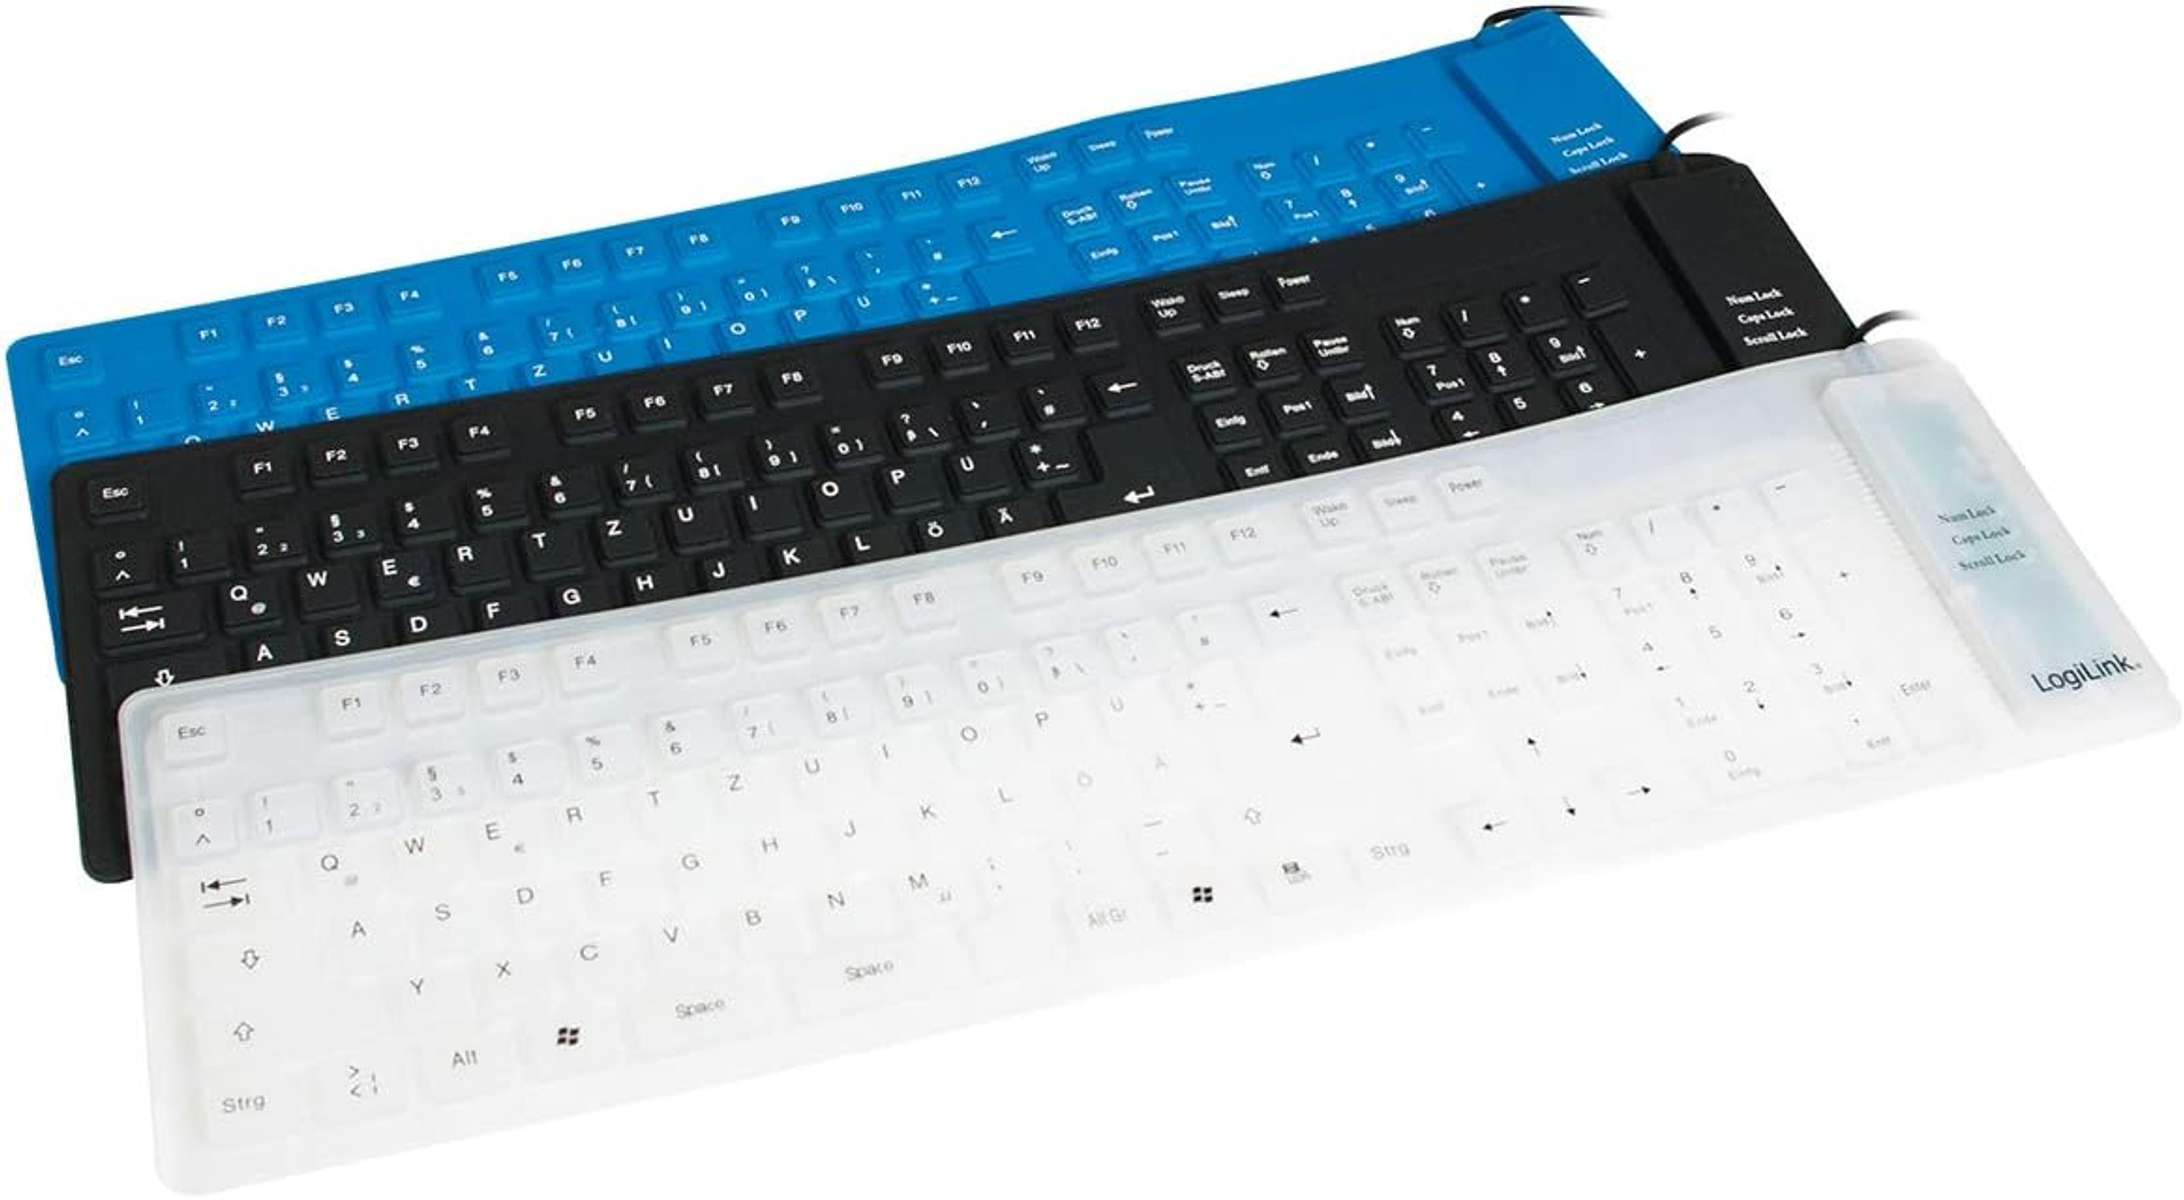 LOGILINK ID0019A, Tastatur